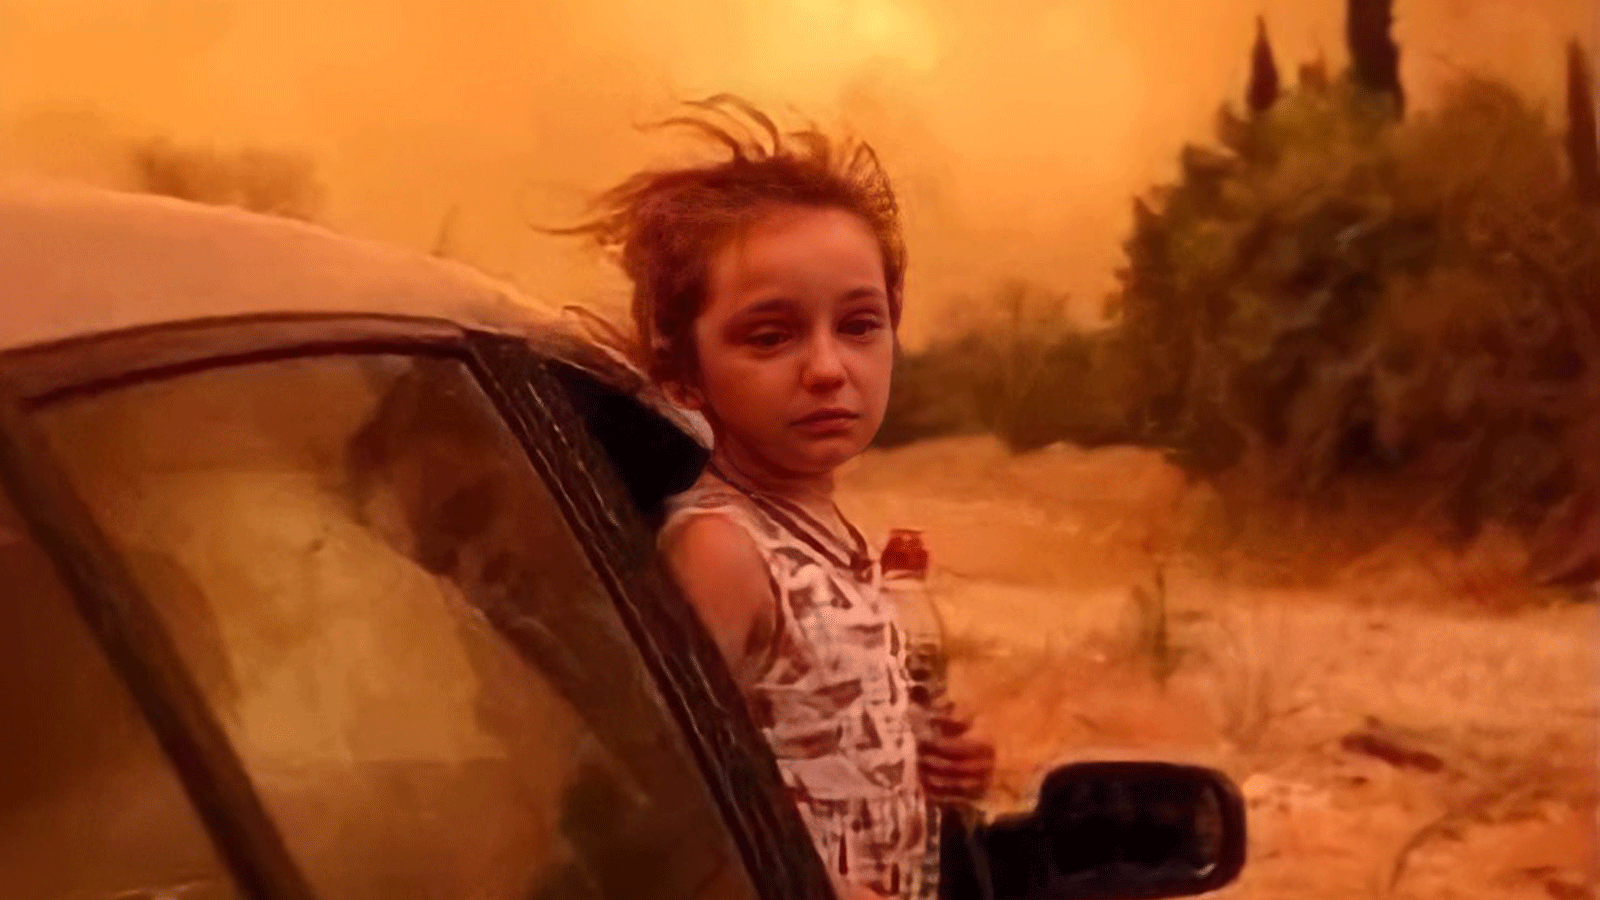 صورة متداولة عبر تويتر لطفلة تُطل من نافذة سيارة هاربة من الحرائق